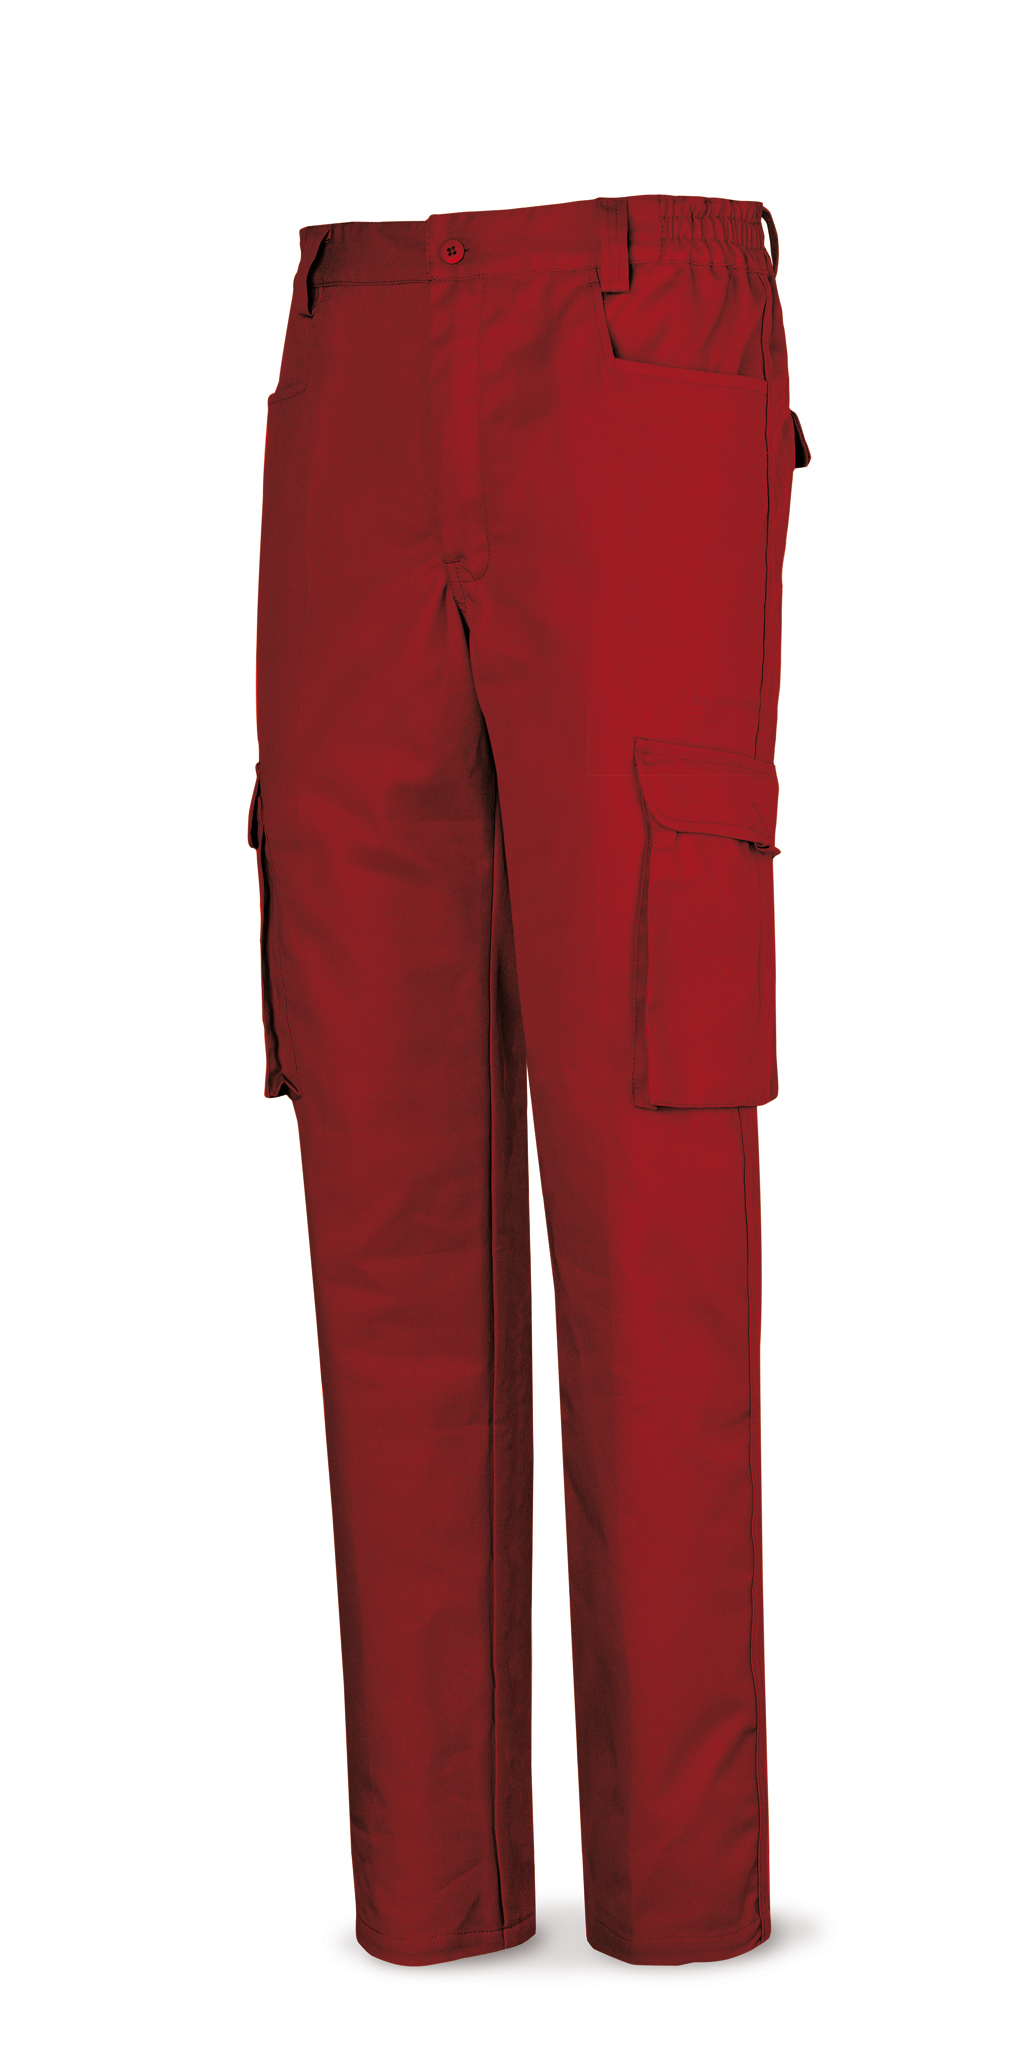 488-PR Top Vestuario Laboral Serie Top Pantalón rojo tergal de 245 g. 